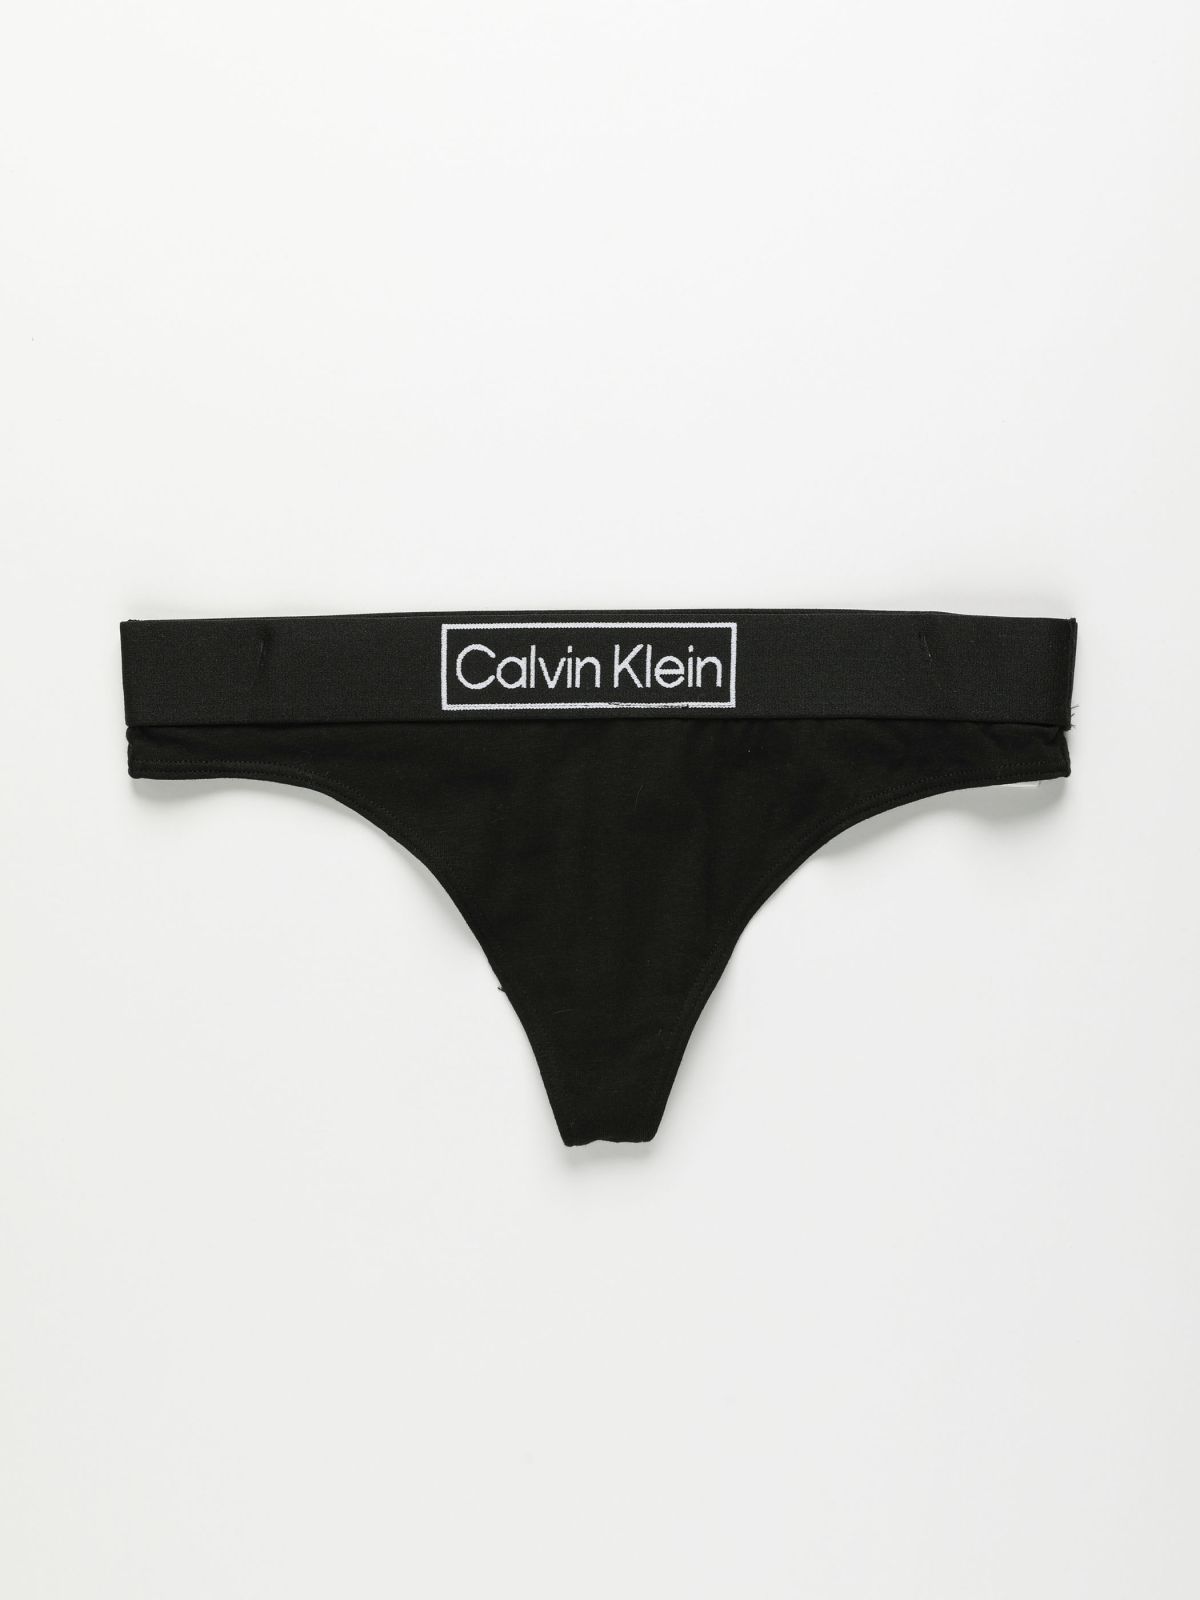  תחתוני חוטיני עם לוגו / נשים של CALVIN KLEIN